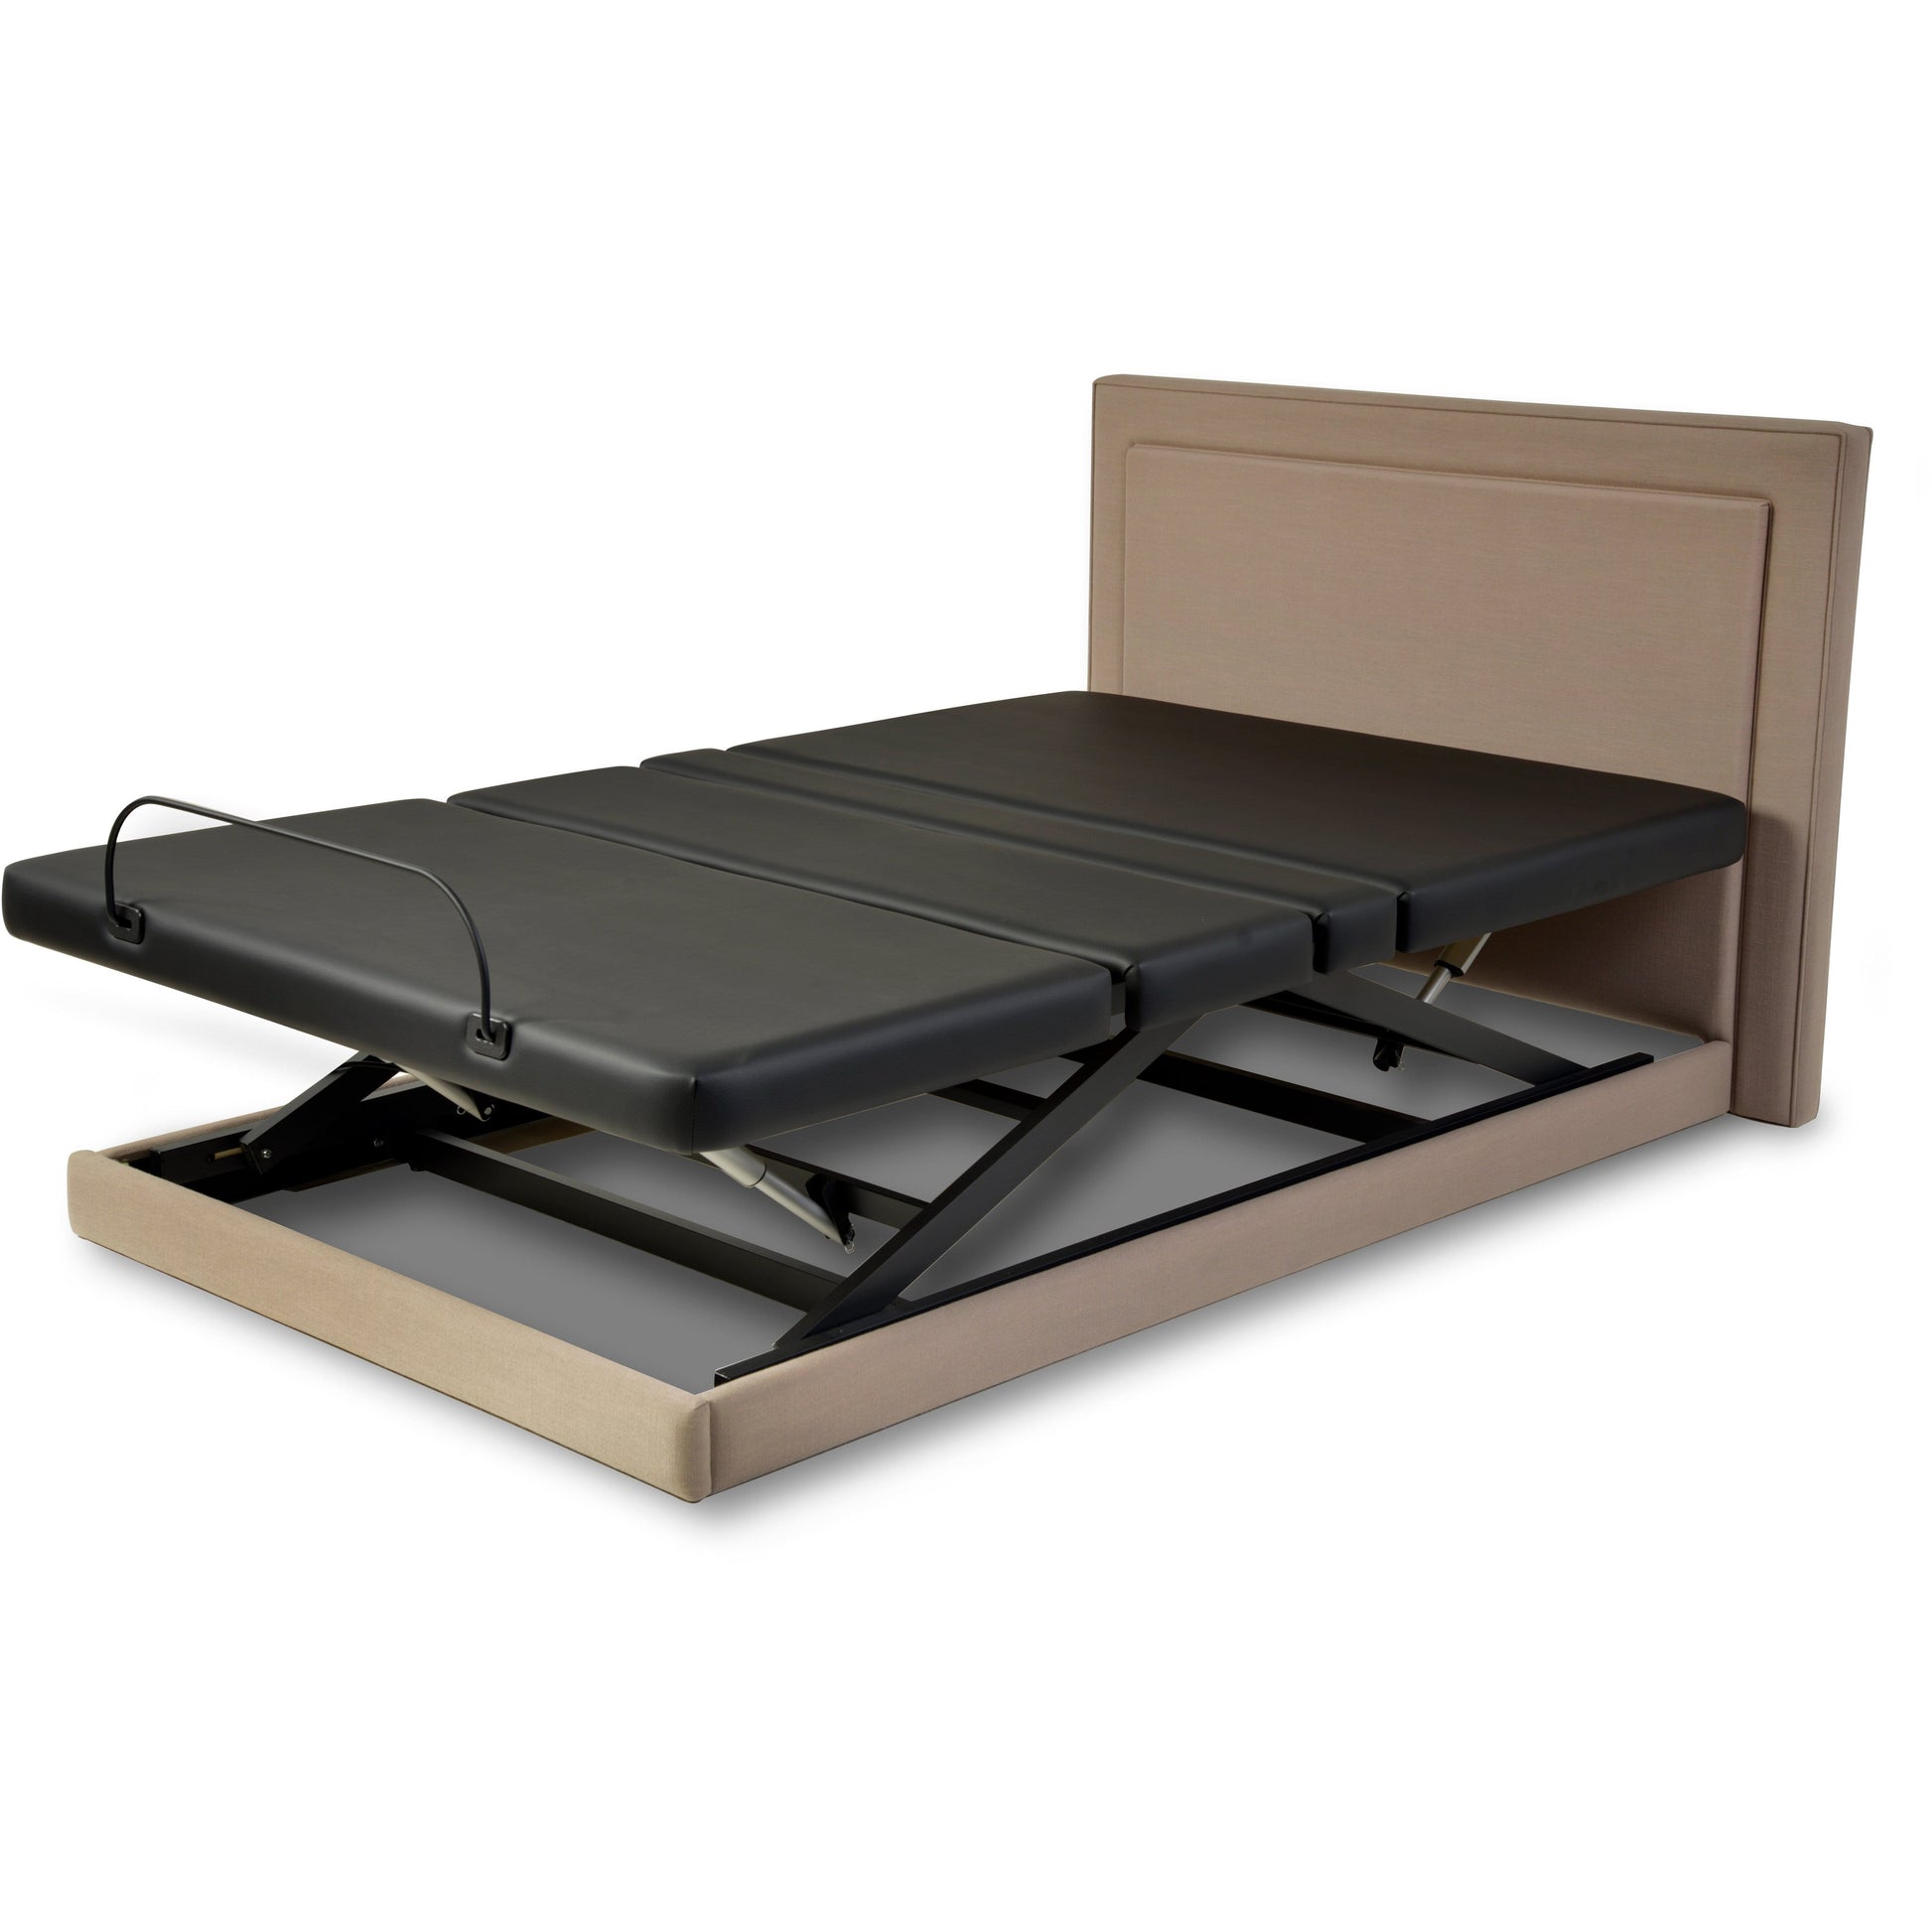 Assured Comforts Hi-Low Adjustable Beds Platform Series Hi-Low Adjustable Beds by Assured Comfort®